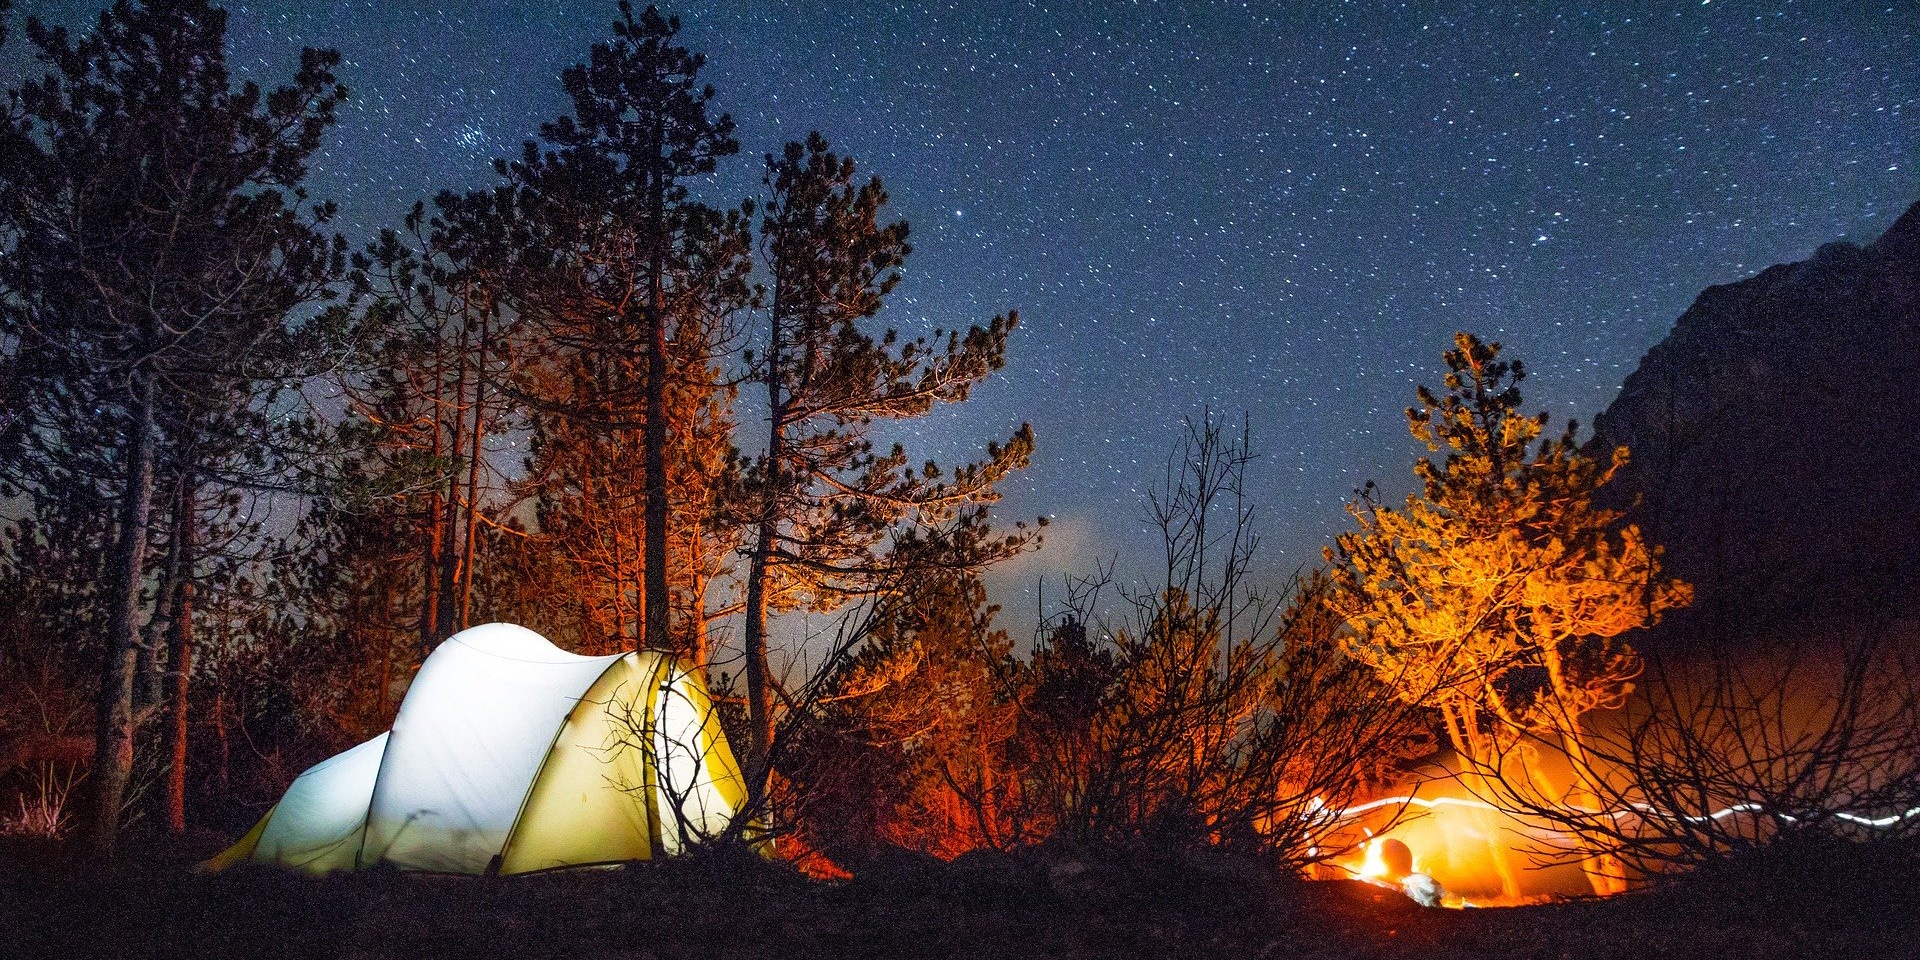 Провести ночь в палатке под звездным небом, это же так круто!